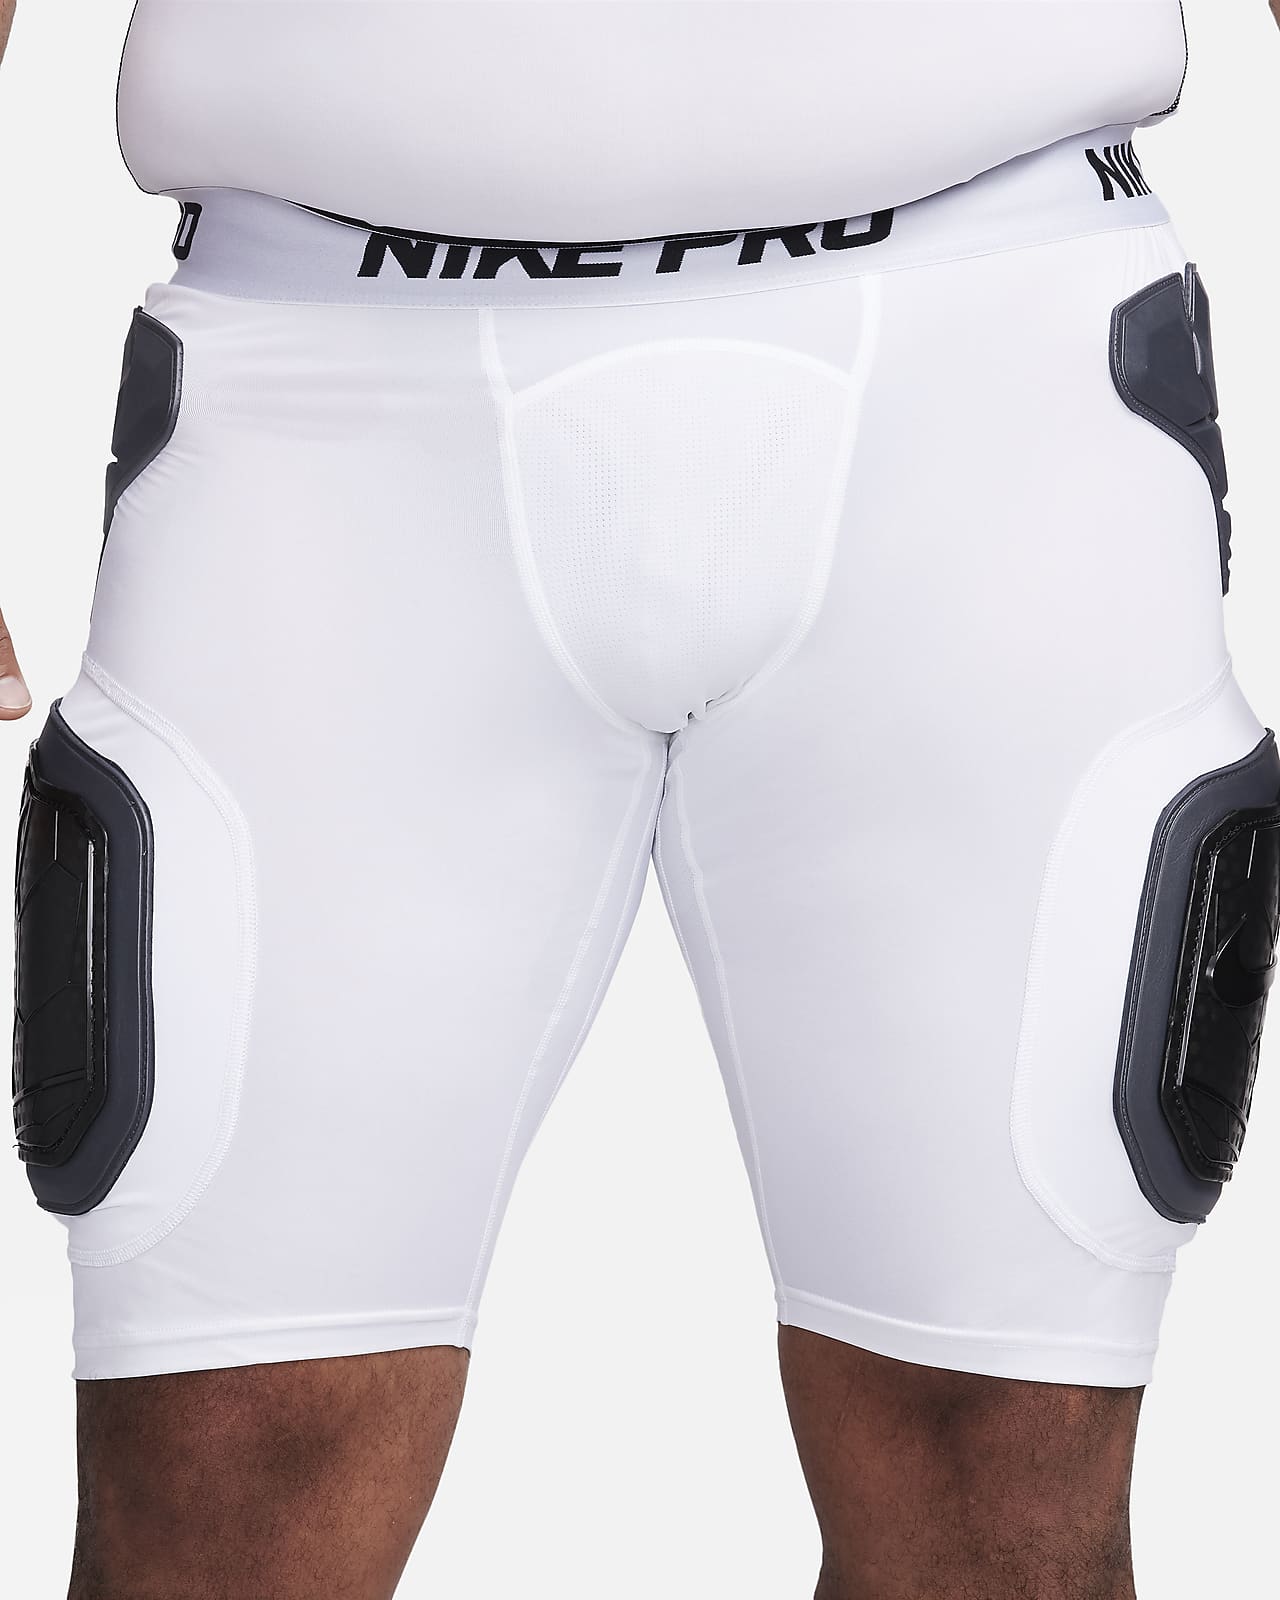 Used Nike NIKE PRO HYPERSTRONG GIRDLE 2X Football Pants and Bottoms  Football Pants and Bottoms